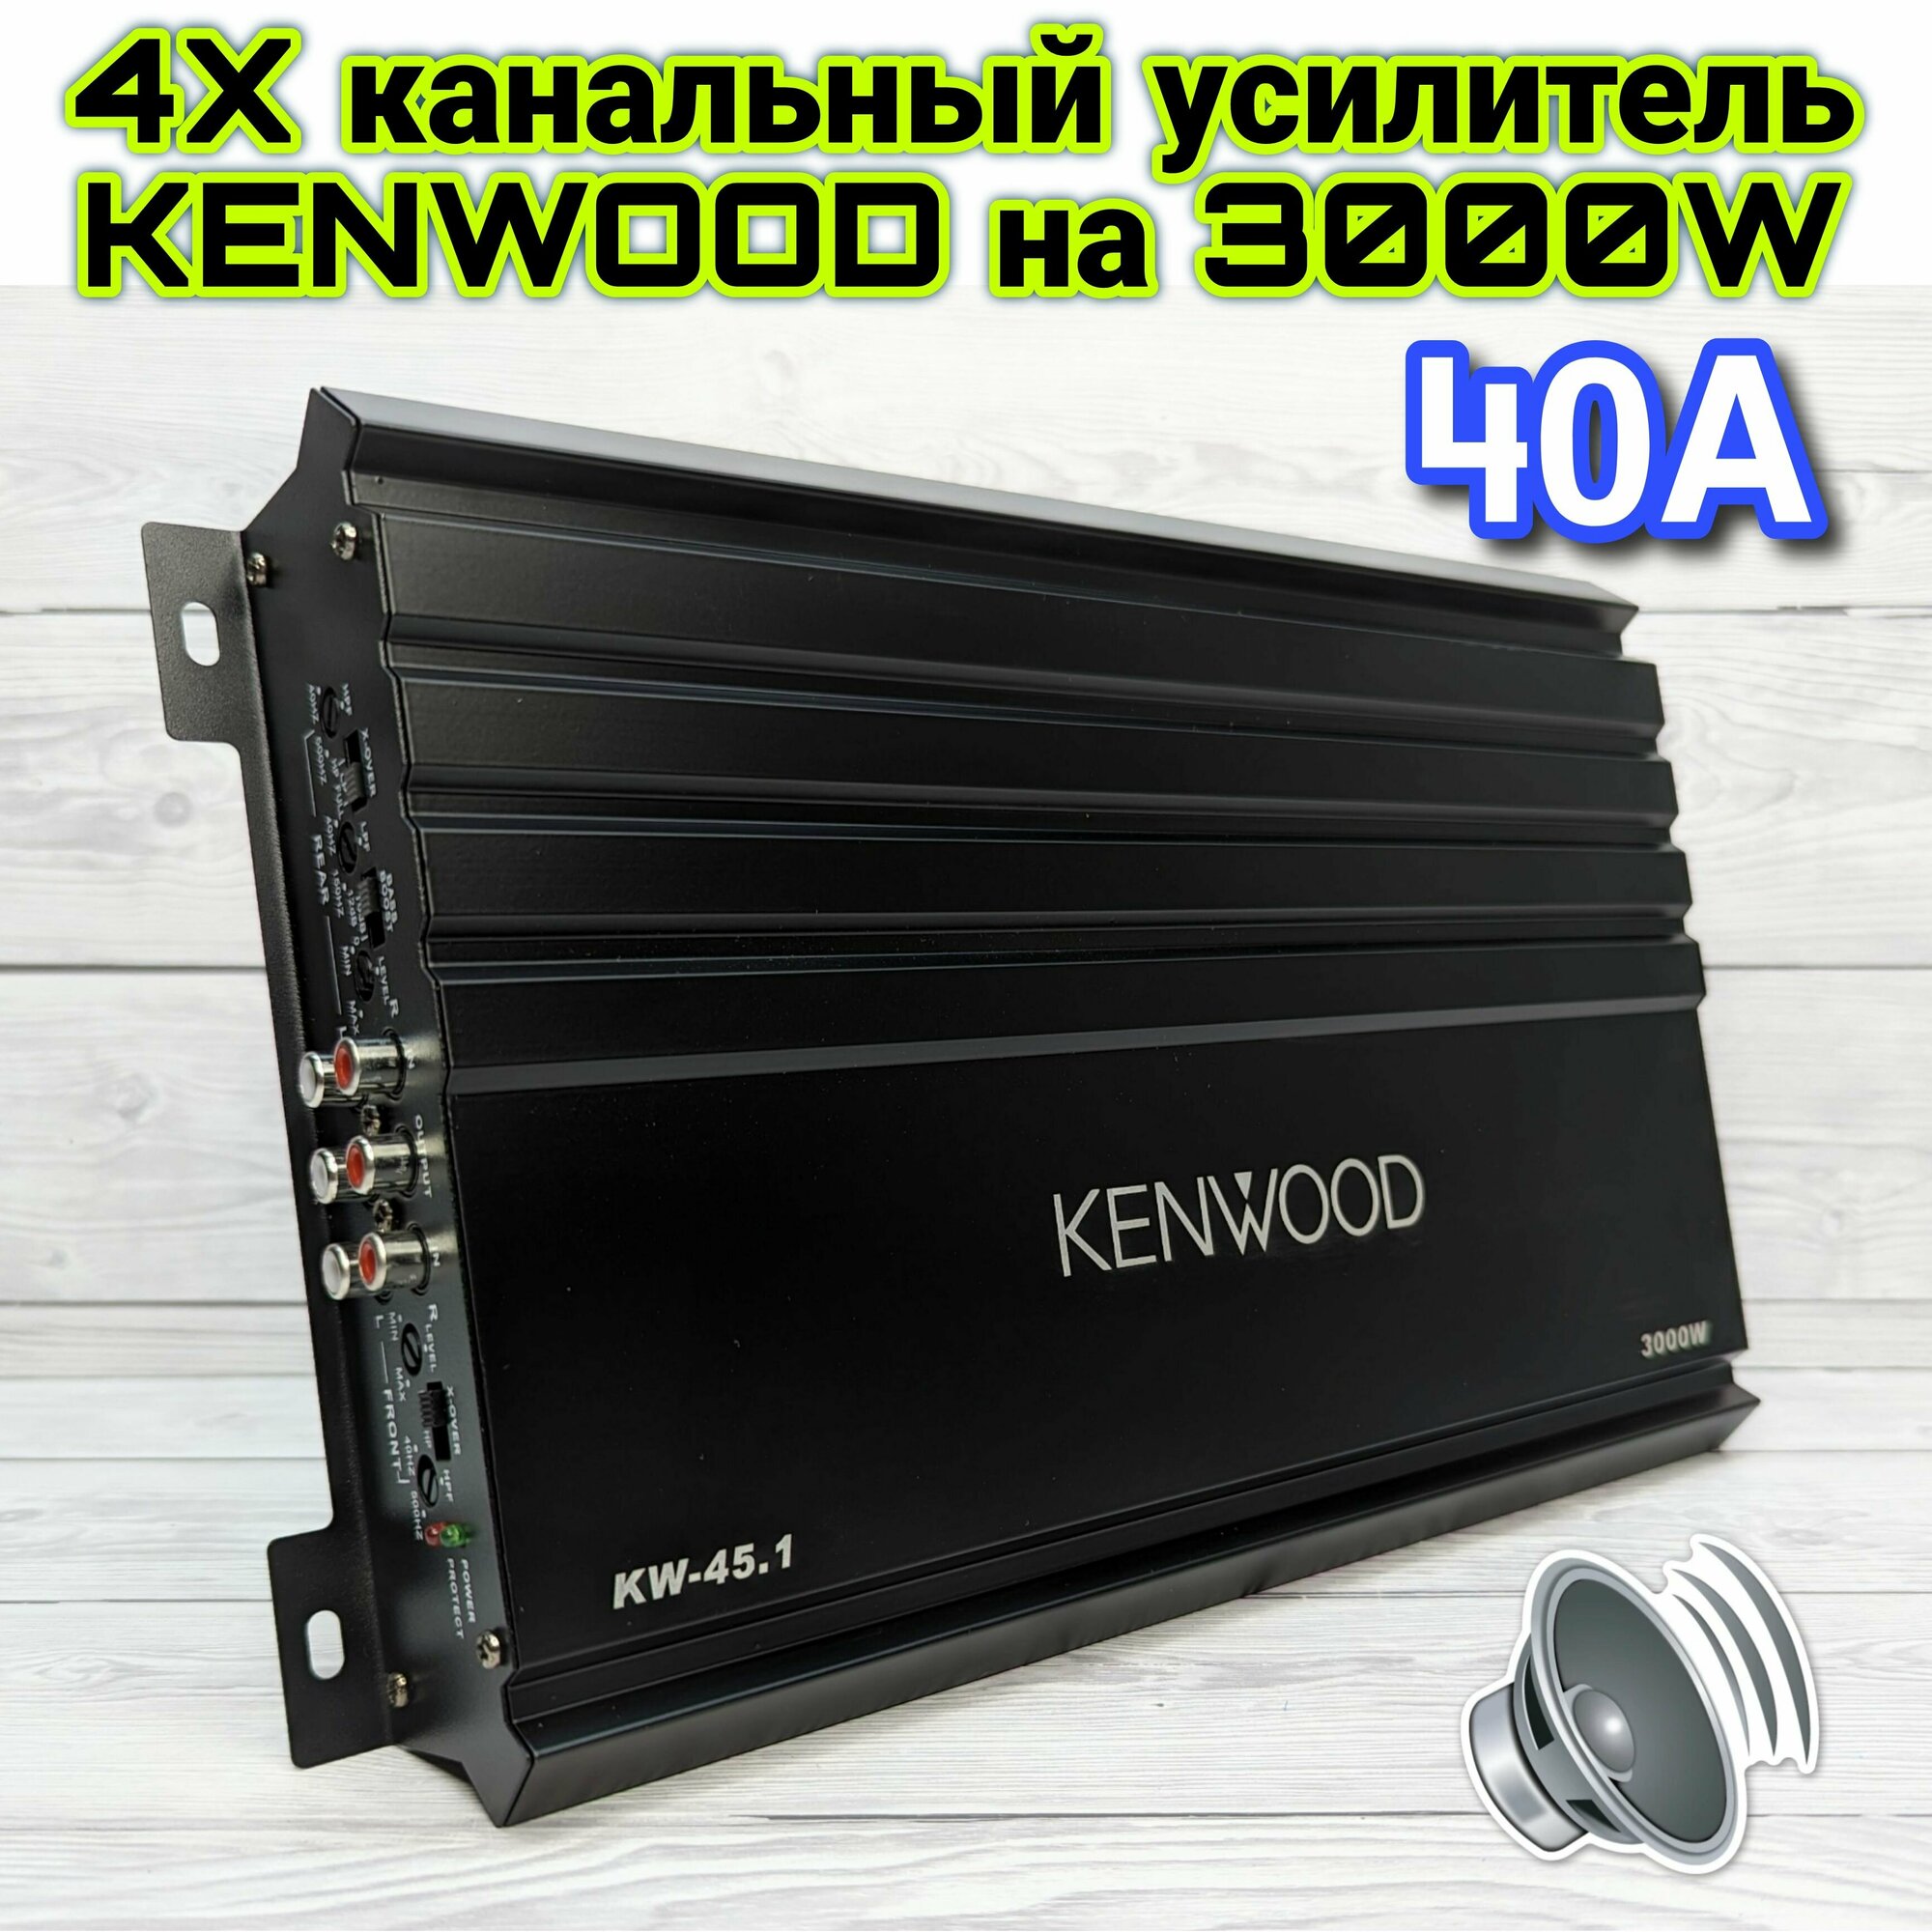 Автомобильный усилитель KENWOOD KW-45.1, Max мощность 3000W, 4 канала, класс А/B, 40A